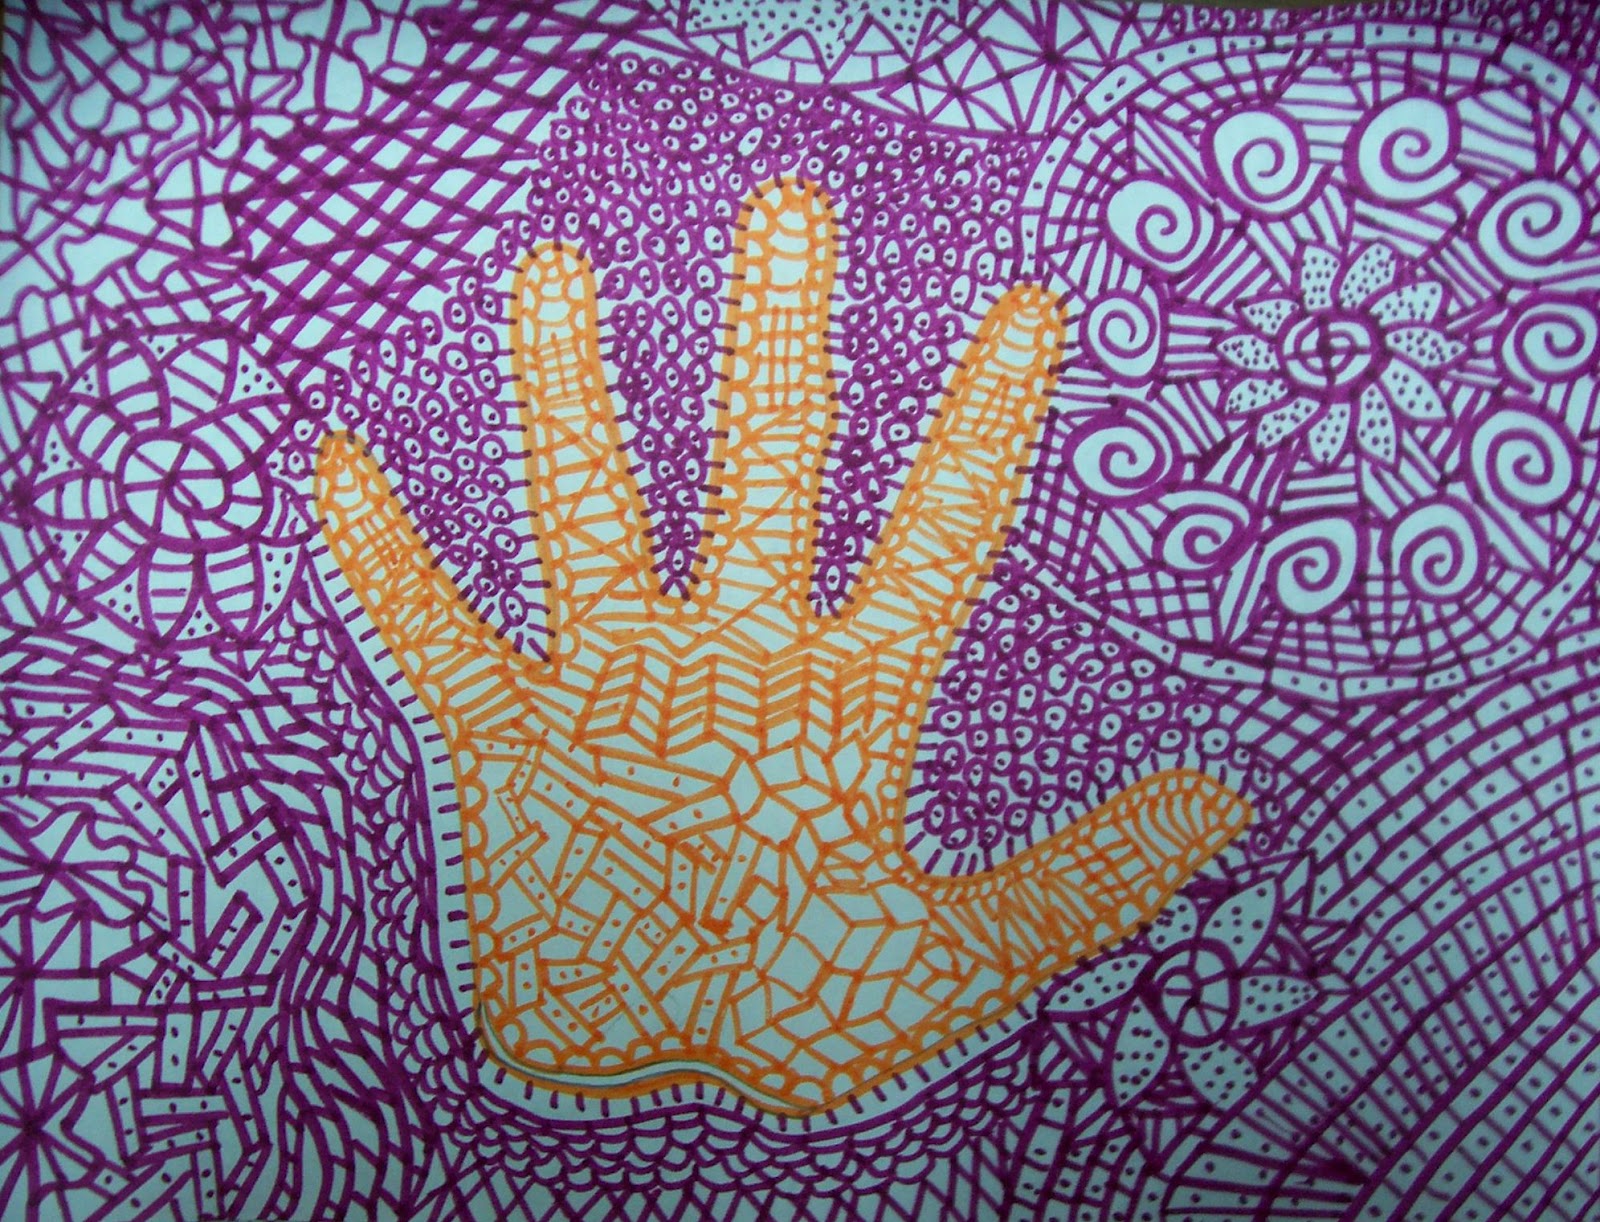 Promise hands Art. Как нарисовать руку 1. Elements of Art. Use your hands